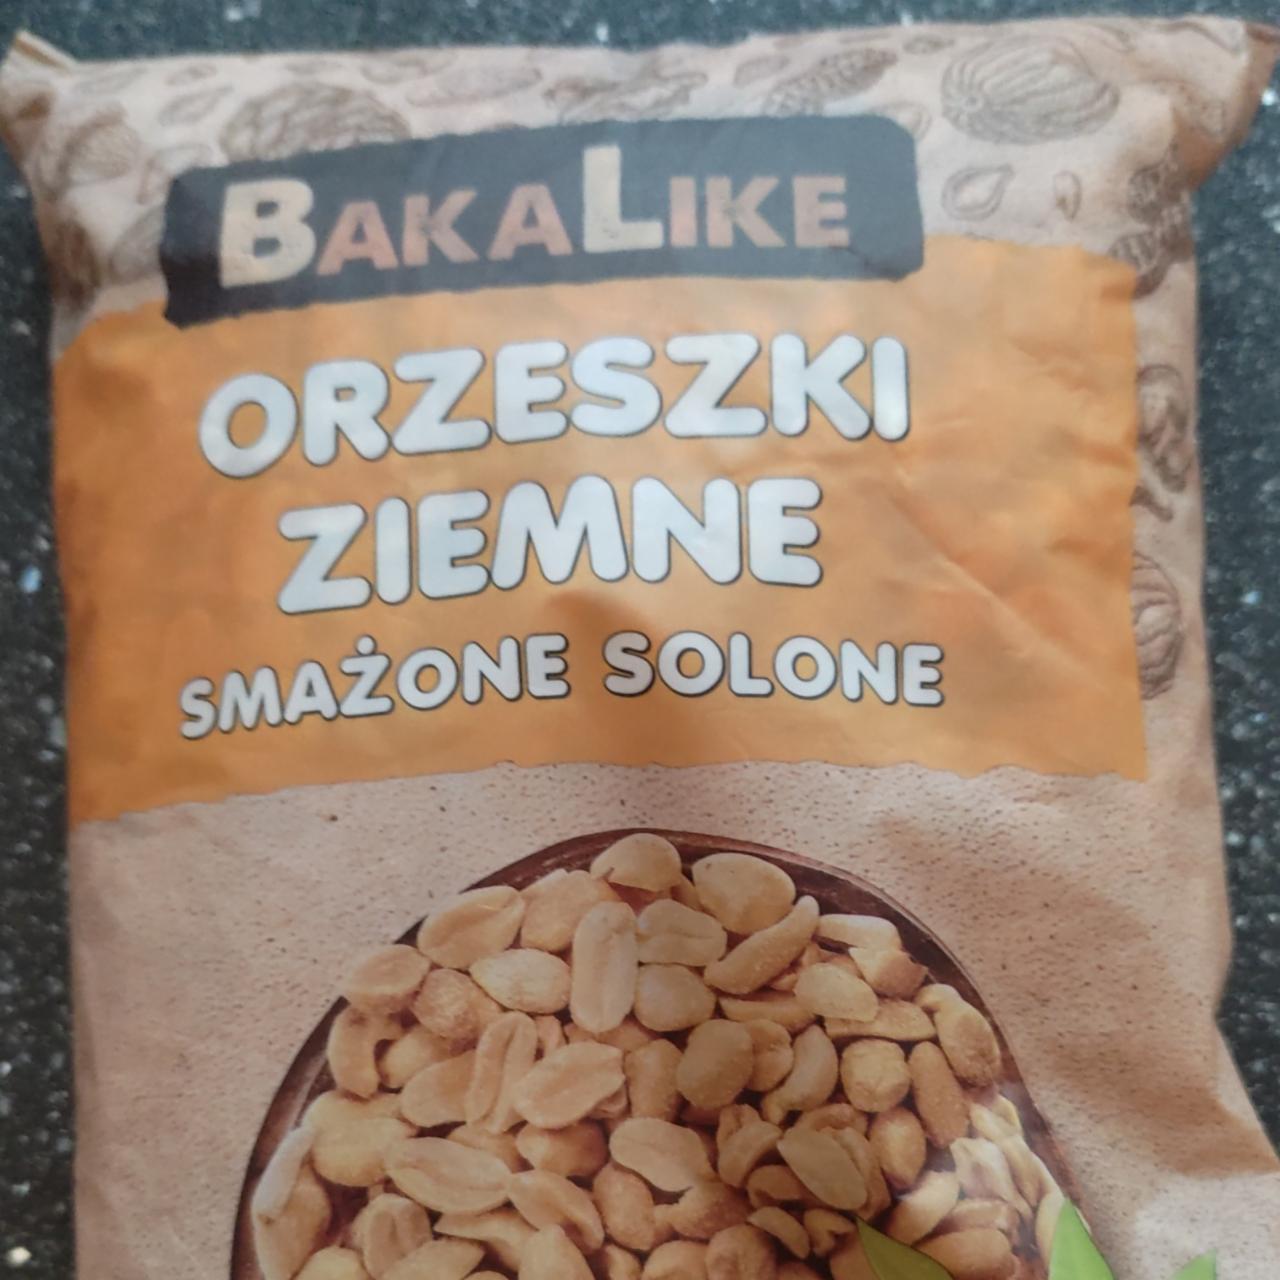 Zdjęcia - orzeszki ziemne smażone solone Bakalike